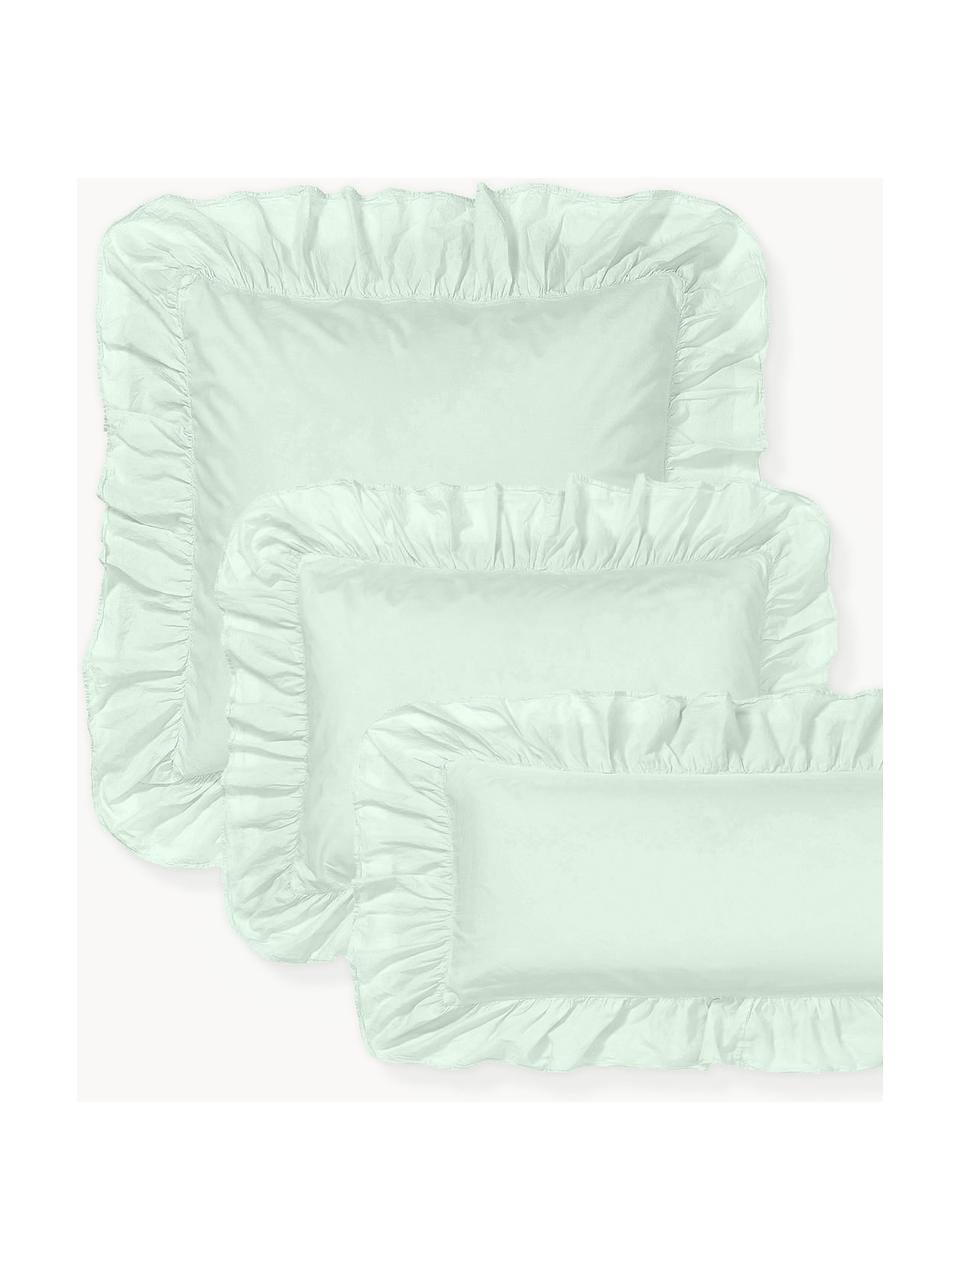 Funda de almohada de percal de algodón lavado con volantes Louane, Verde salvia, An 45 x L 110 cm